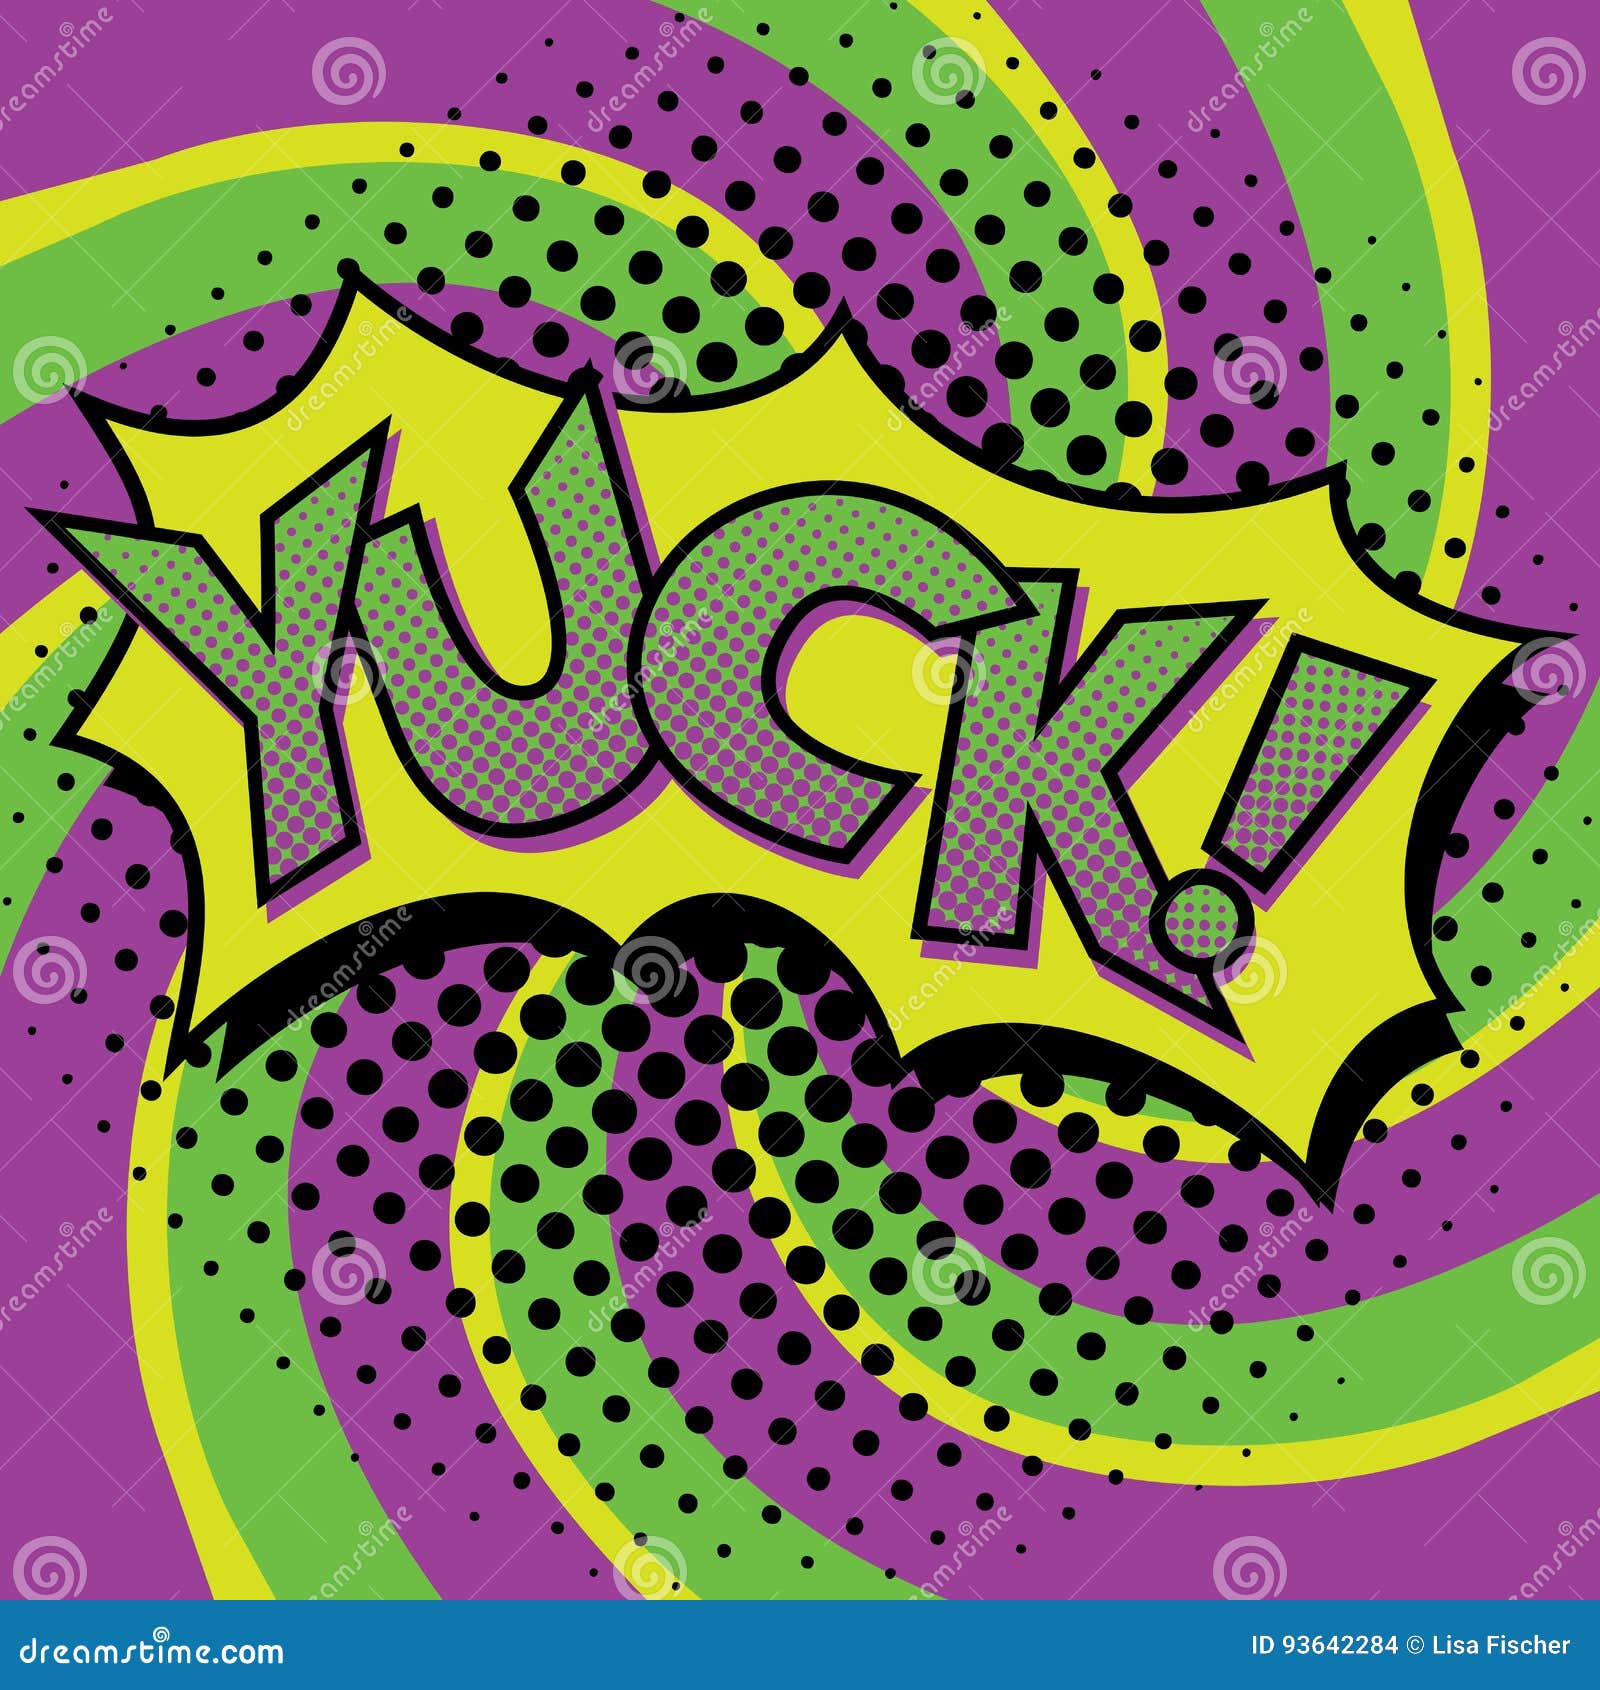  Pop  Art  YUCK Text  Design  stock vector Illustration of 